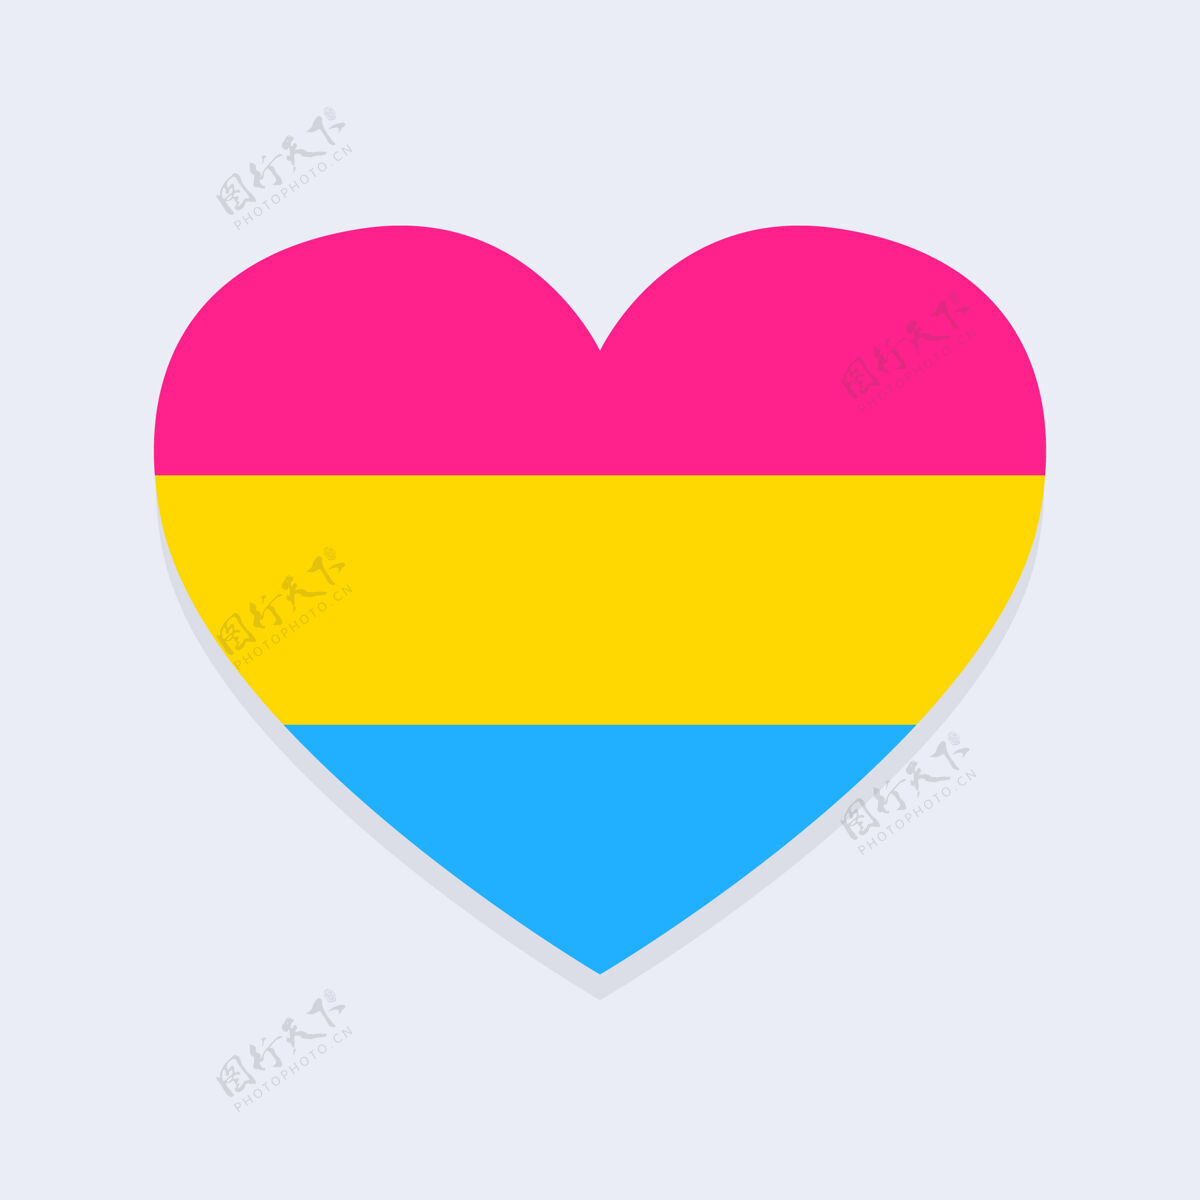 同性恋骄傲心形泛性旗庆祝宽容权利